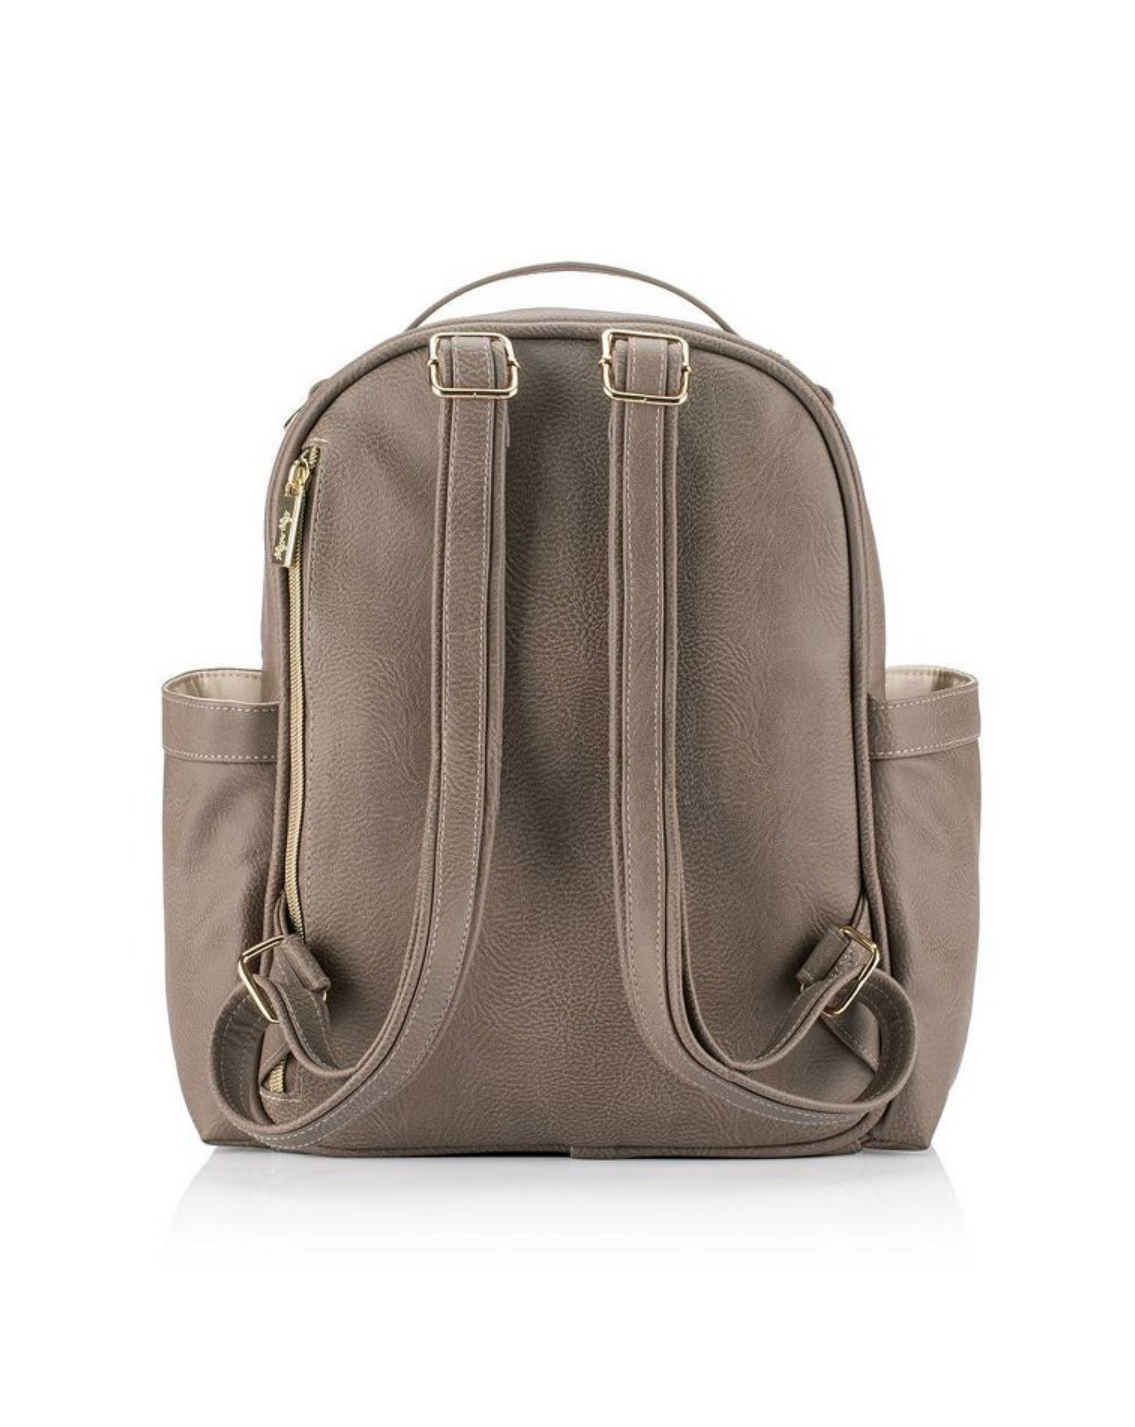 Vanilla Latte Itzy Mini™ Diaper Bag Backpack